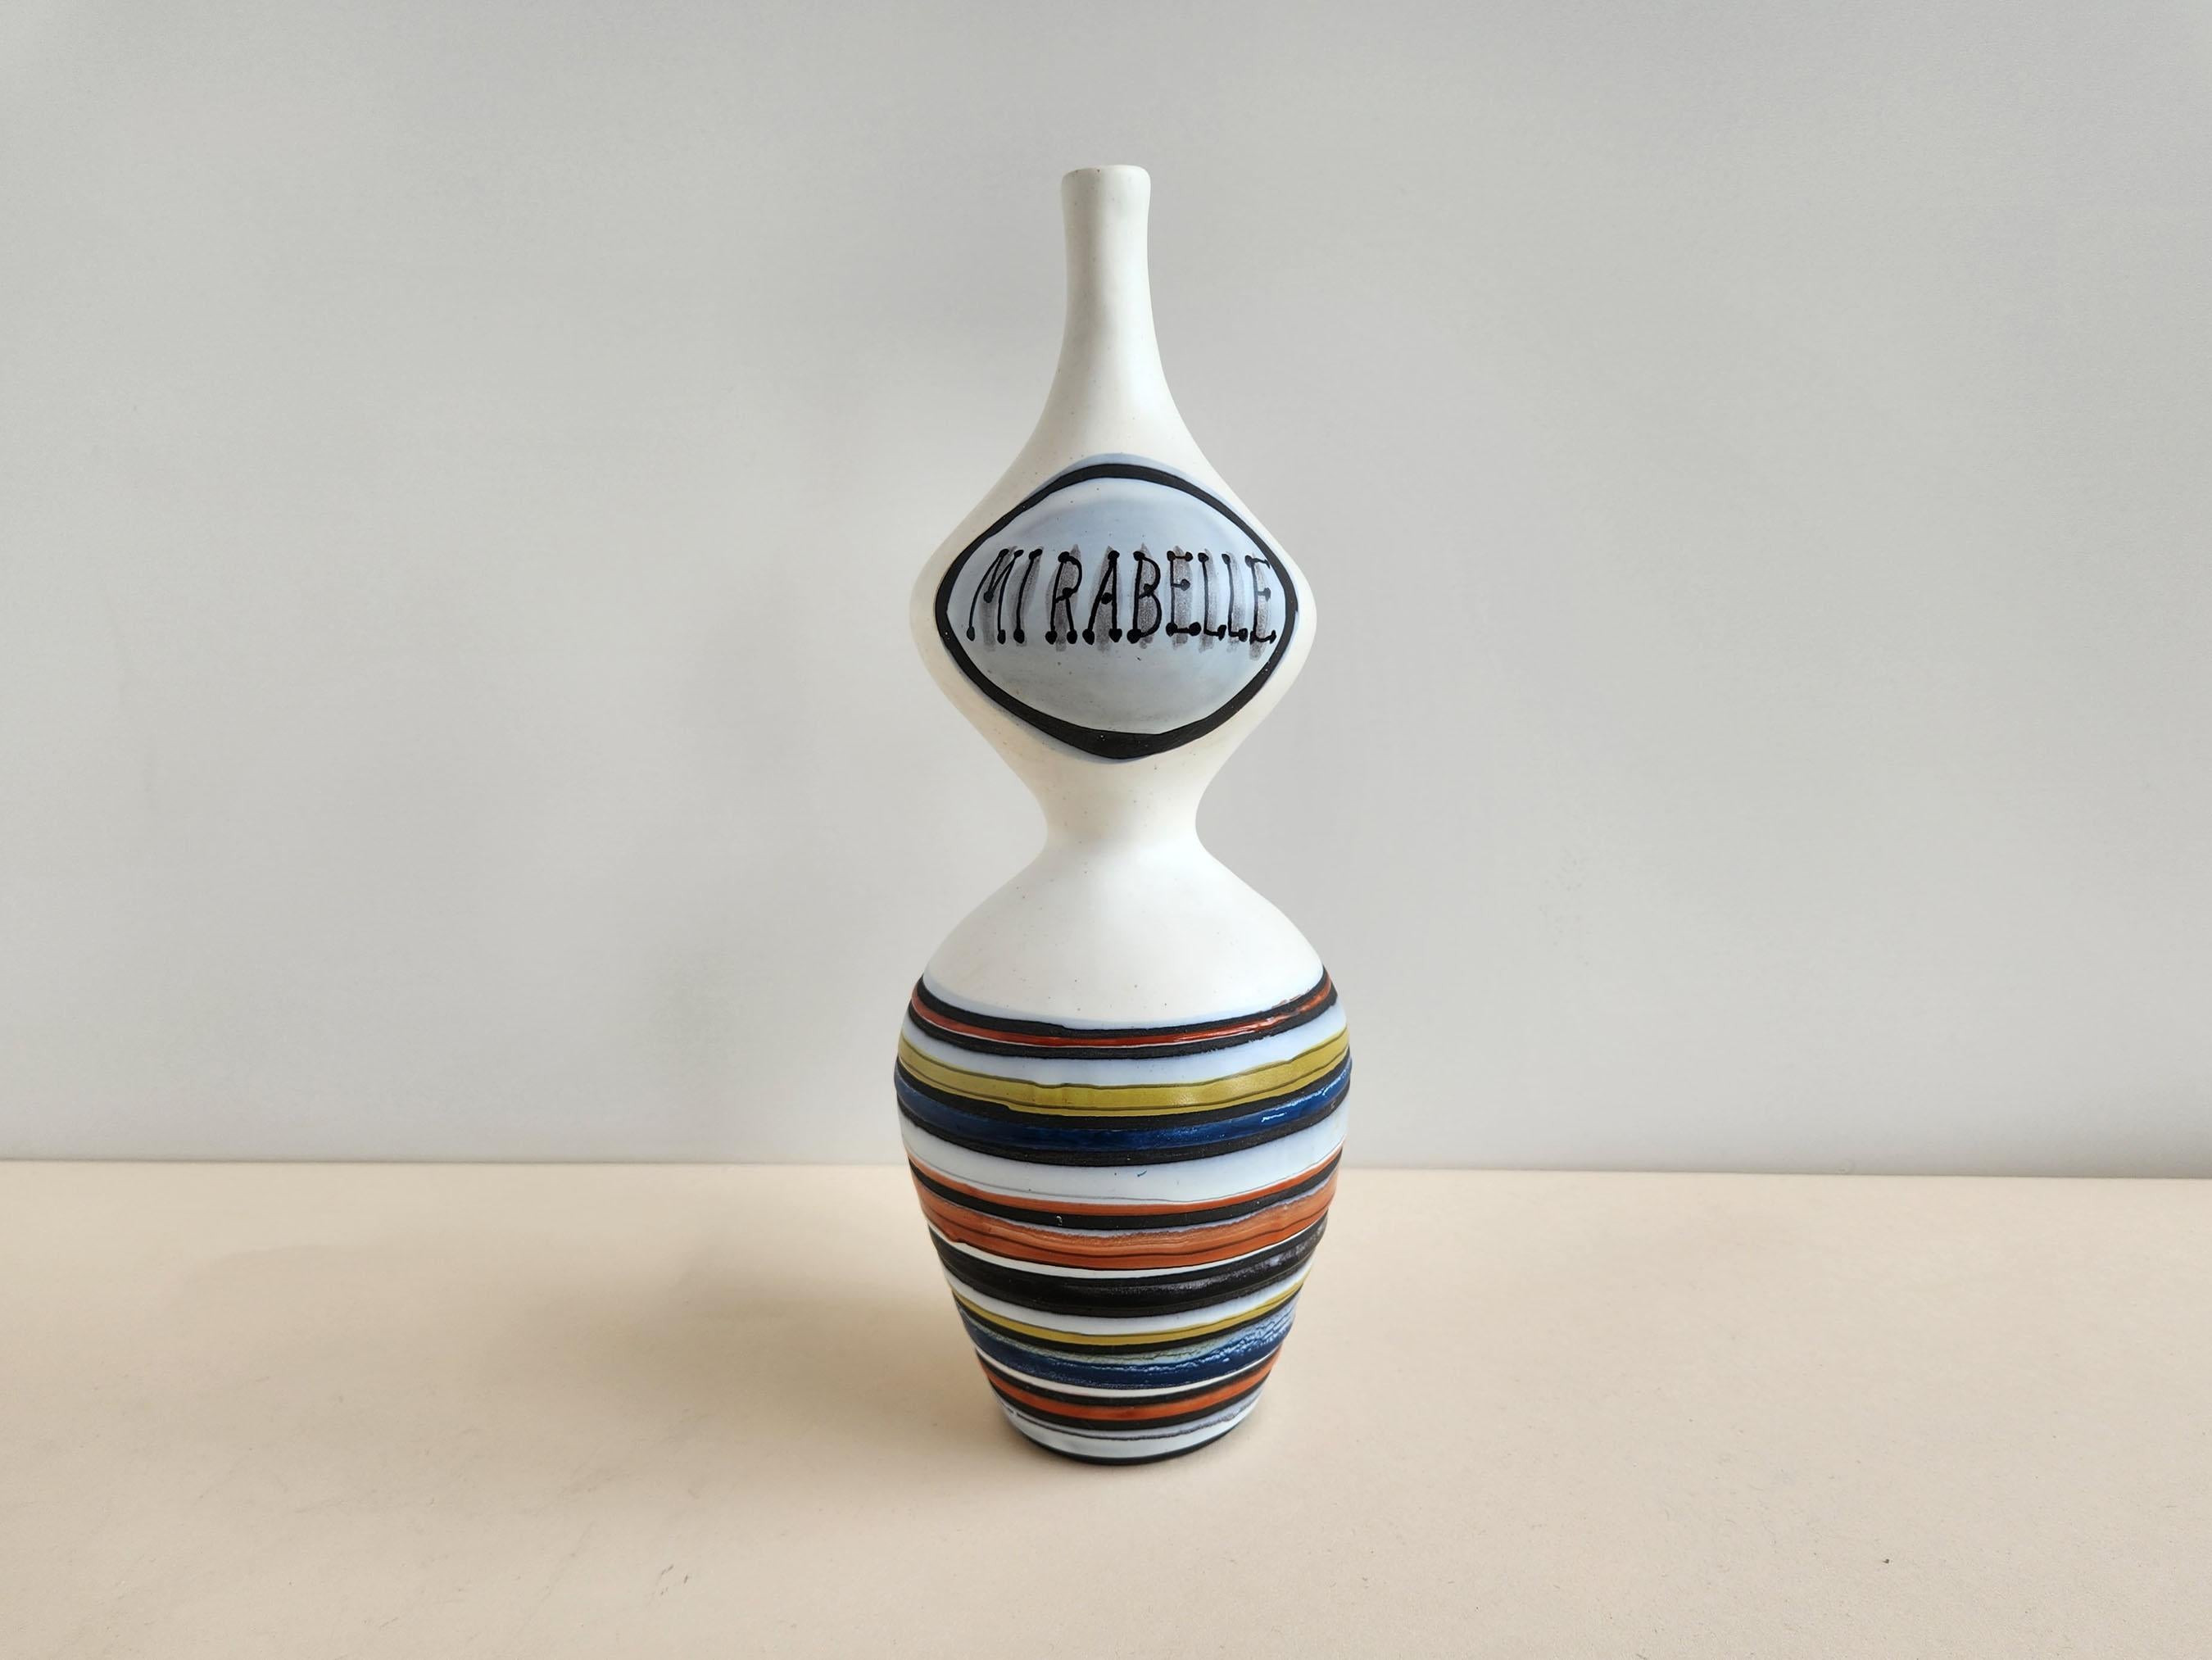 Vintage Mirabelle Keramikflasche von Roger Capron - Vallauris, Frankreich

Roger Capron war ein einflussreicher französischer Keramiker, der für seine Kacheltische und die Verwendung wiederkehrender Motive wie stilisierte Zweige und geometrische